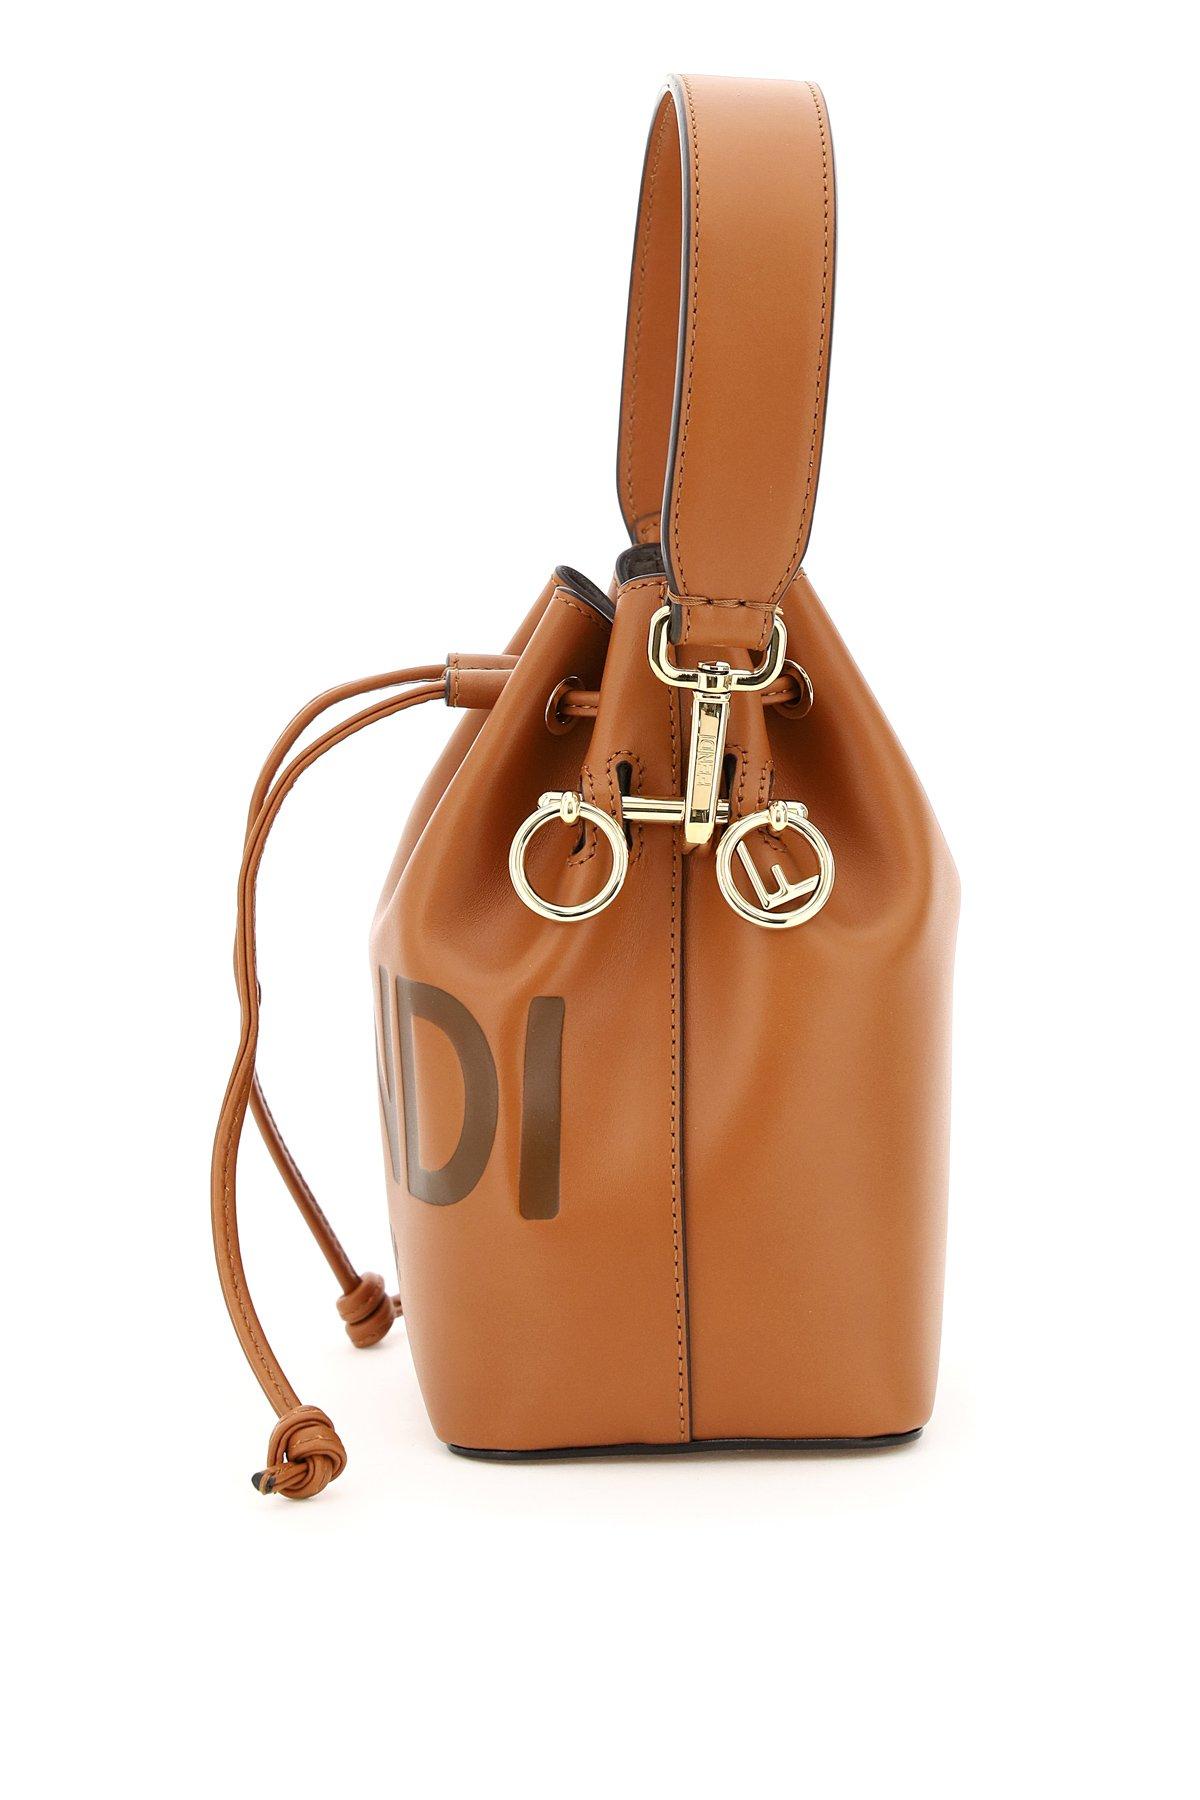 Fendi Mon Tresor Mini Leather Bucket Bag in Tan (Brown) - Save 27 